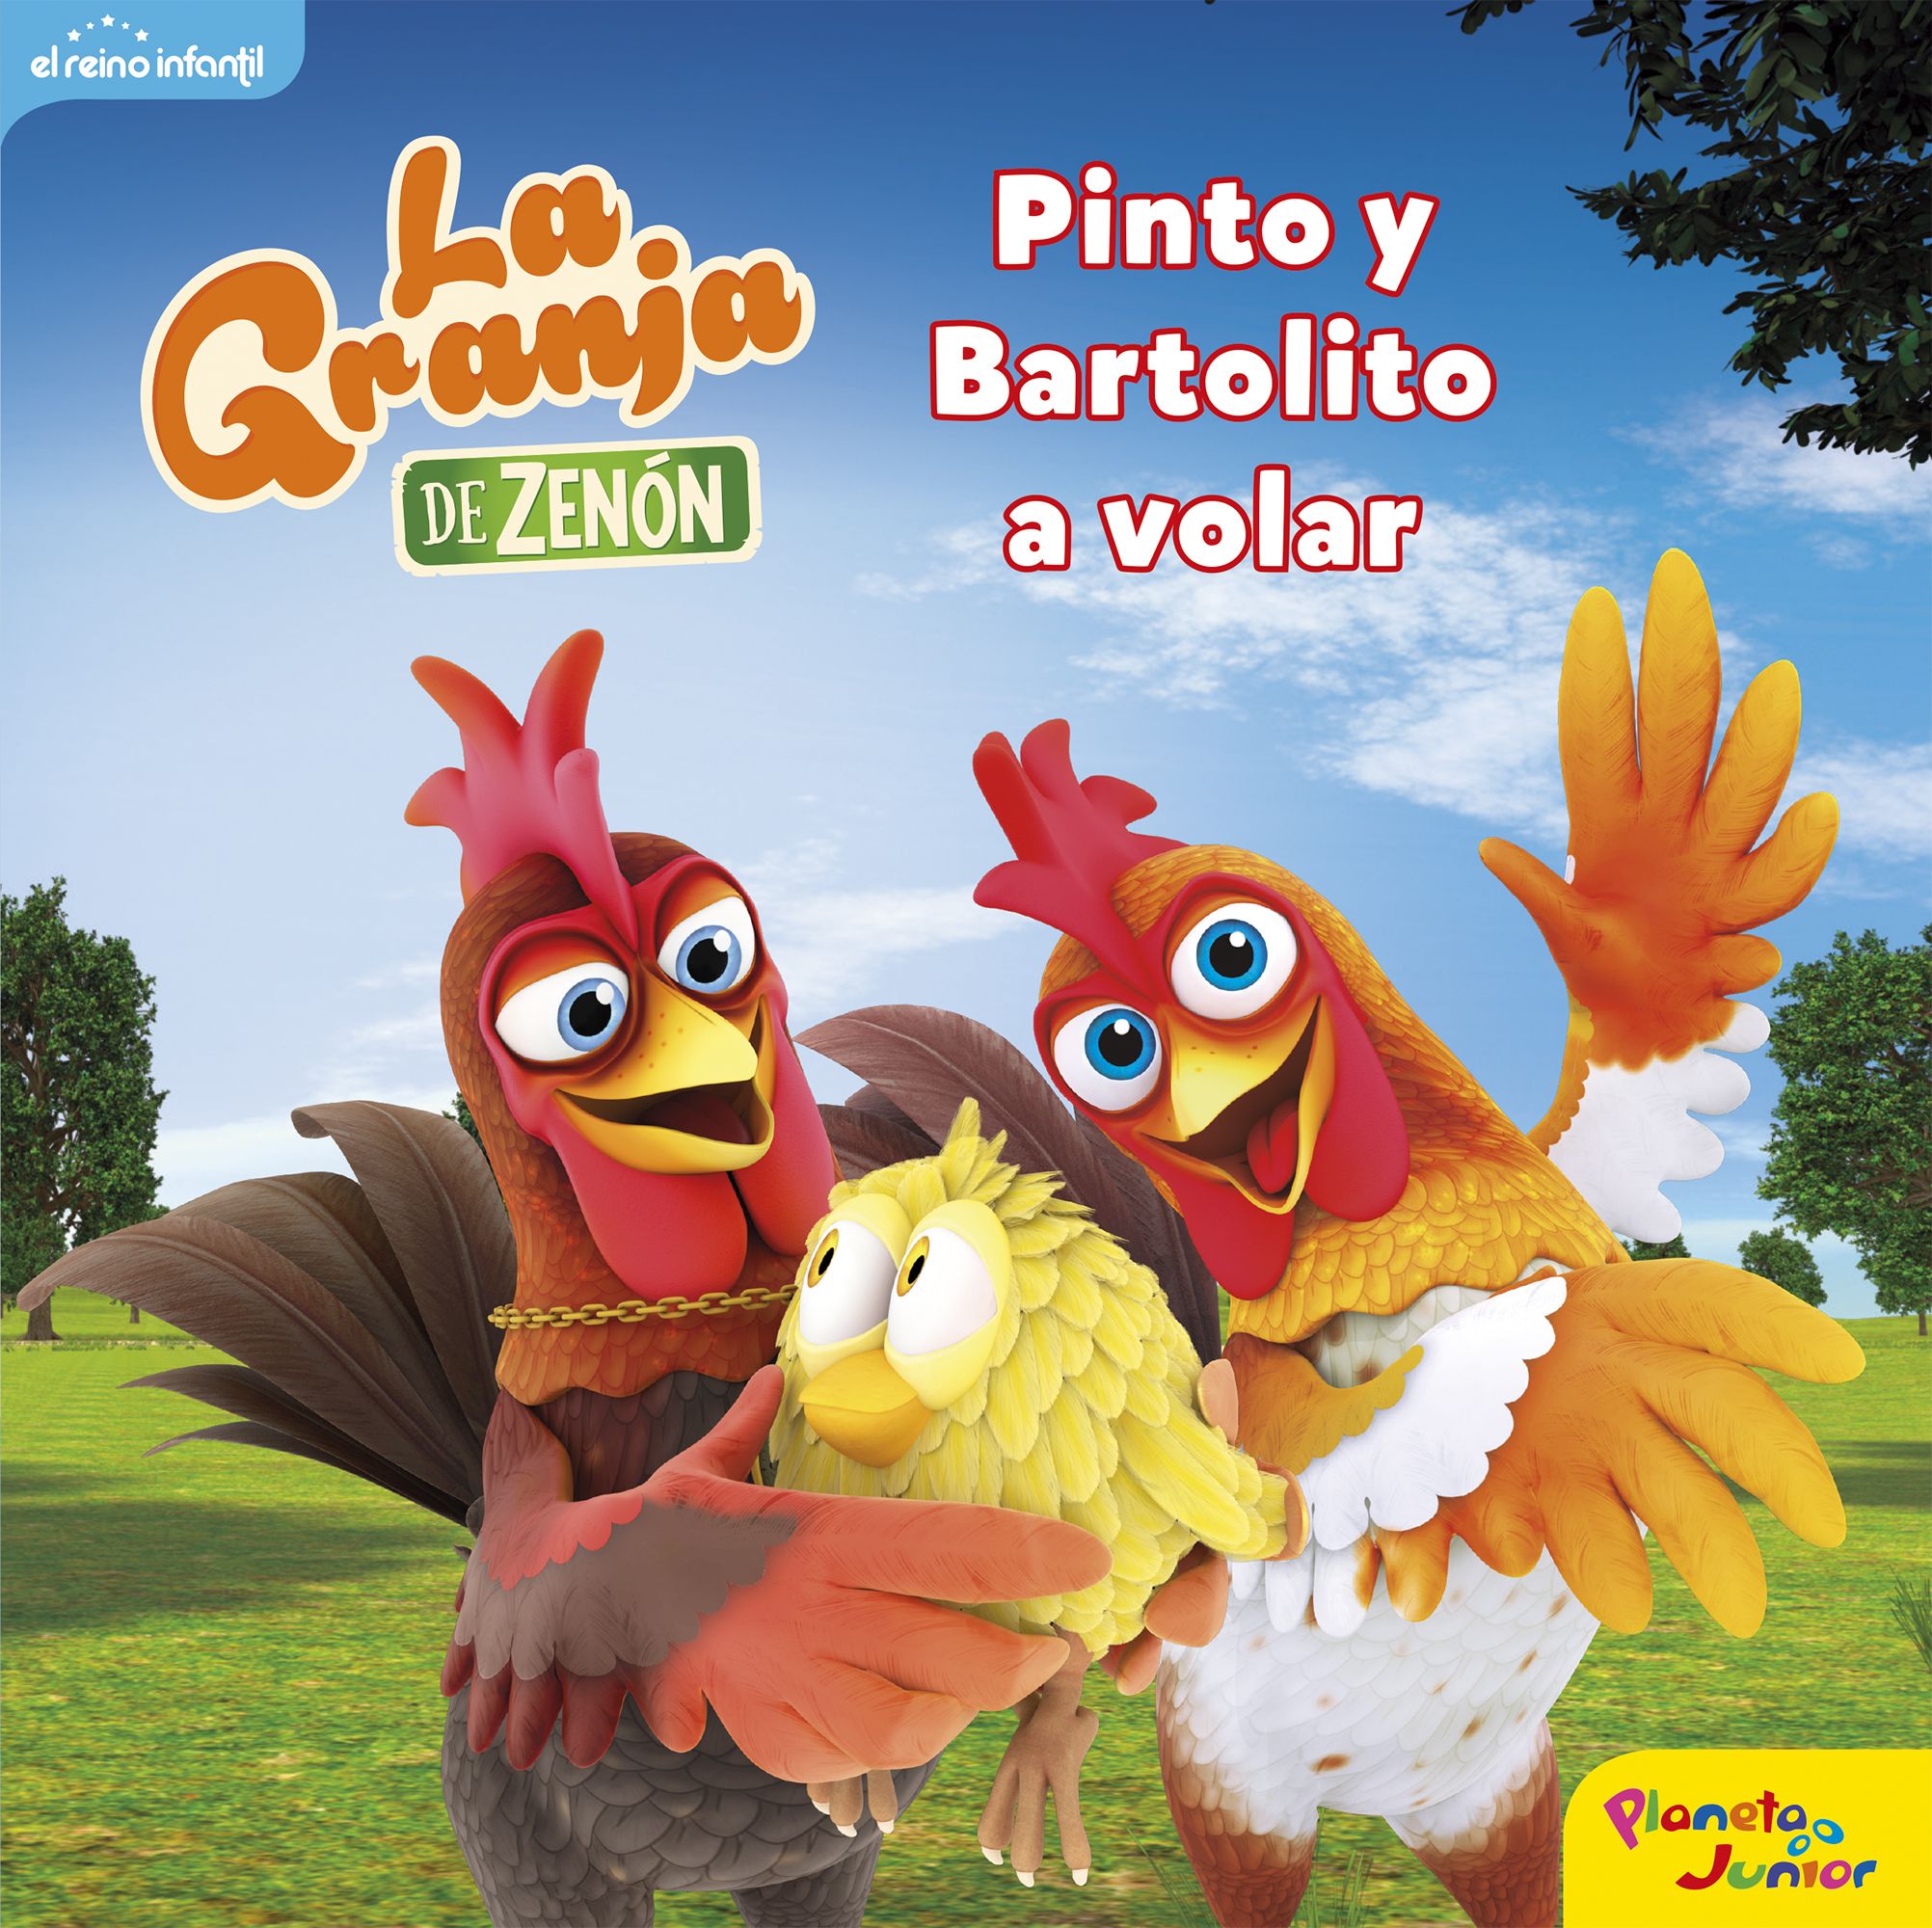 La granja de Zenón. Pinto y Bartolito a volar - El Reino Infantil